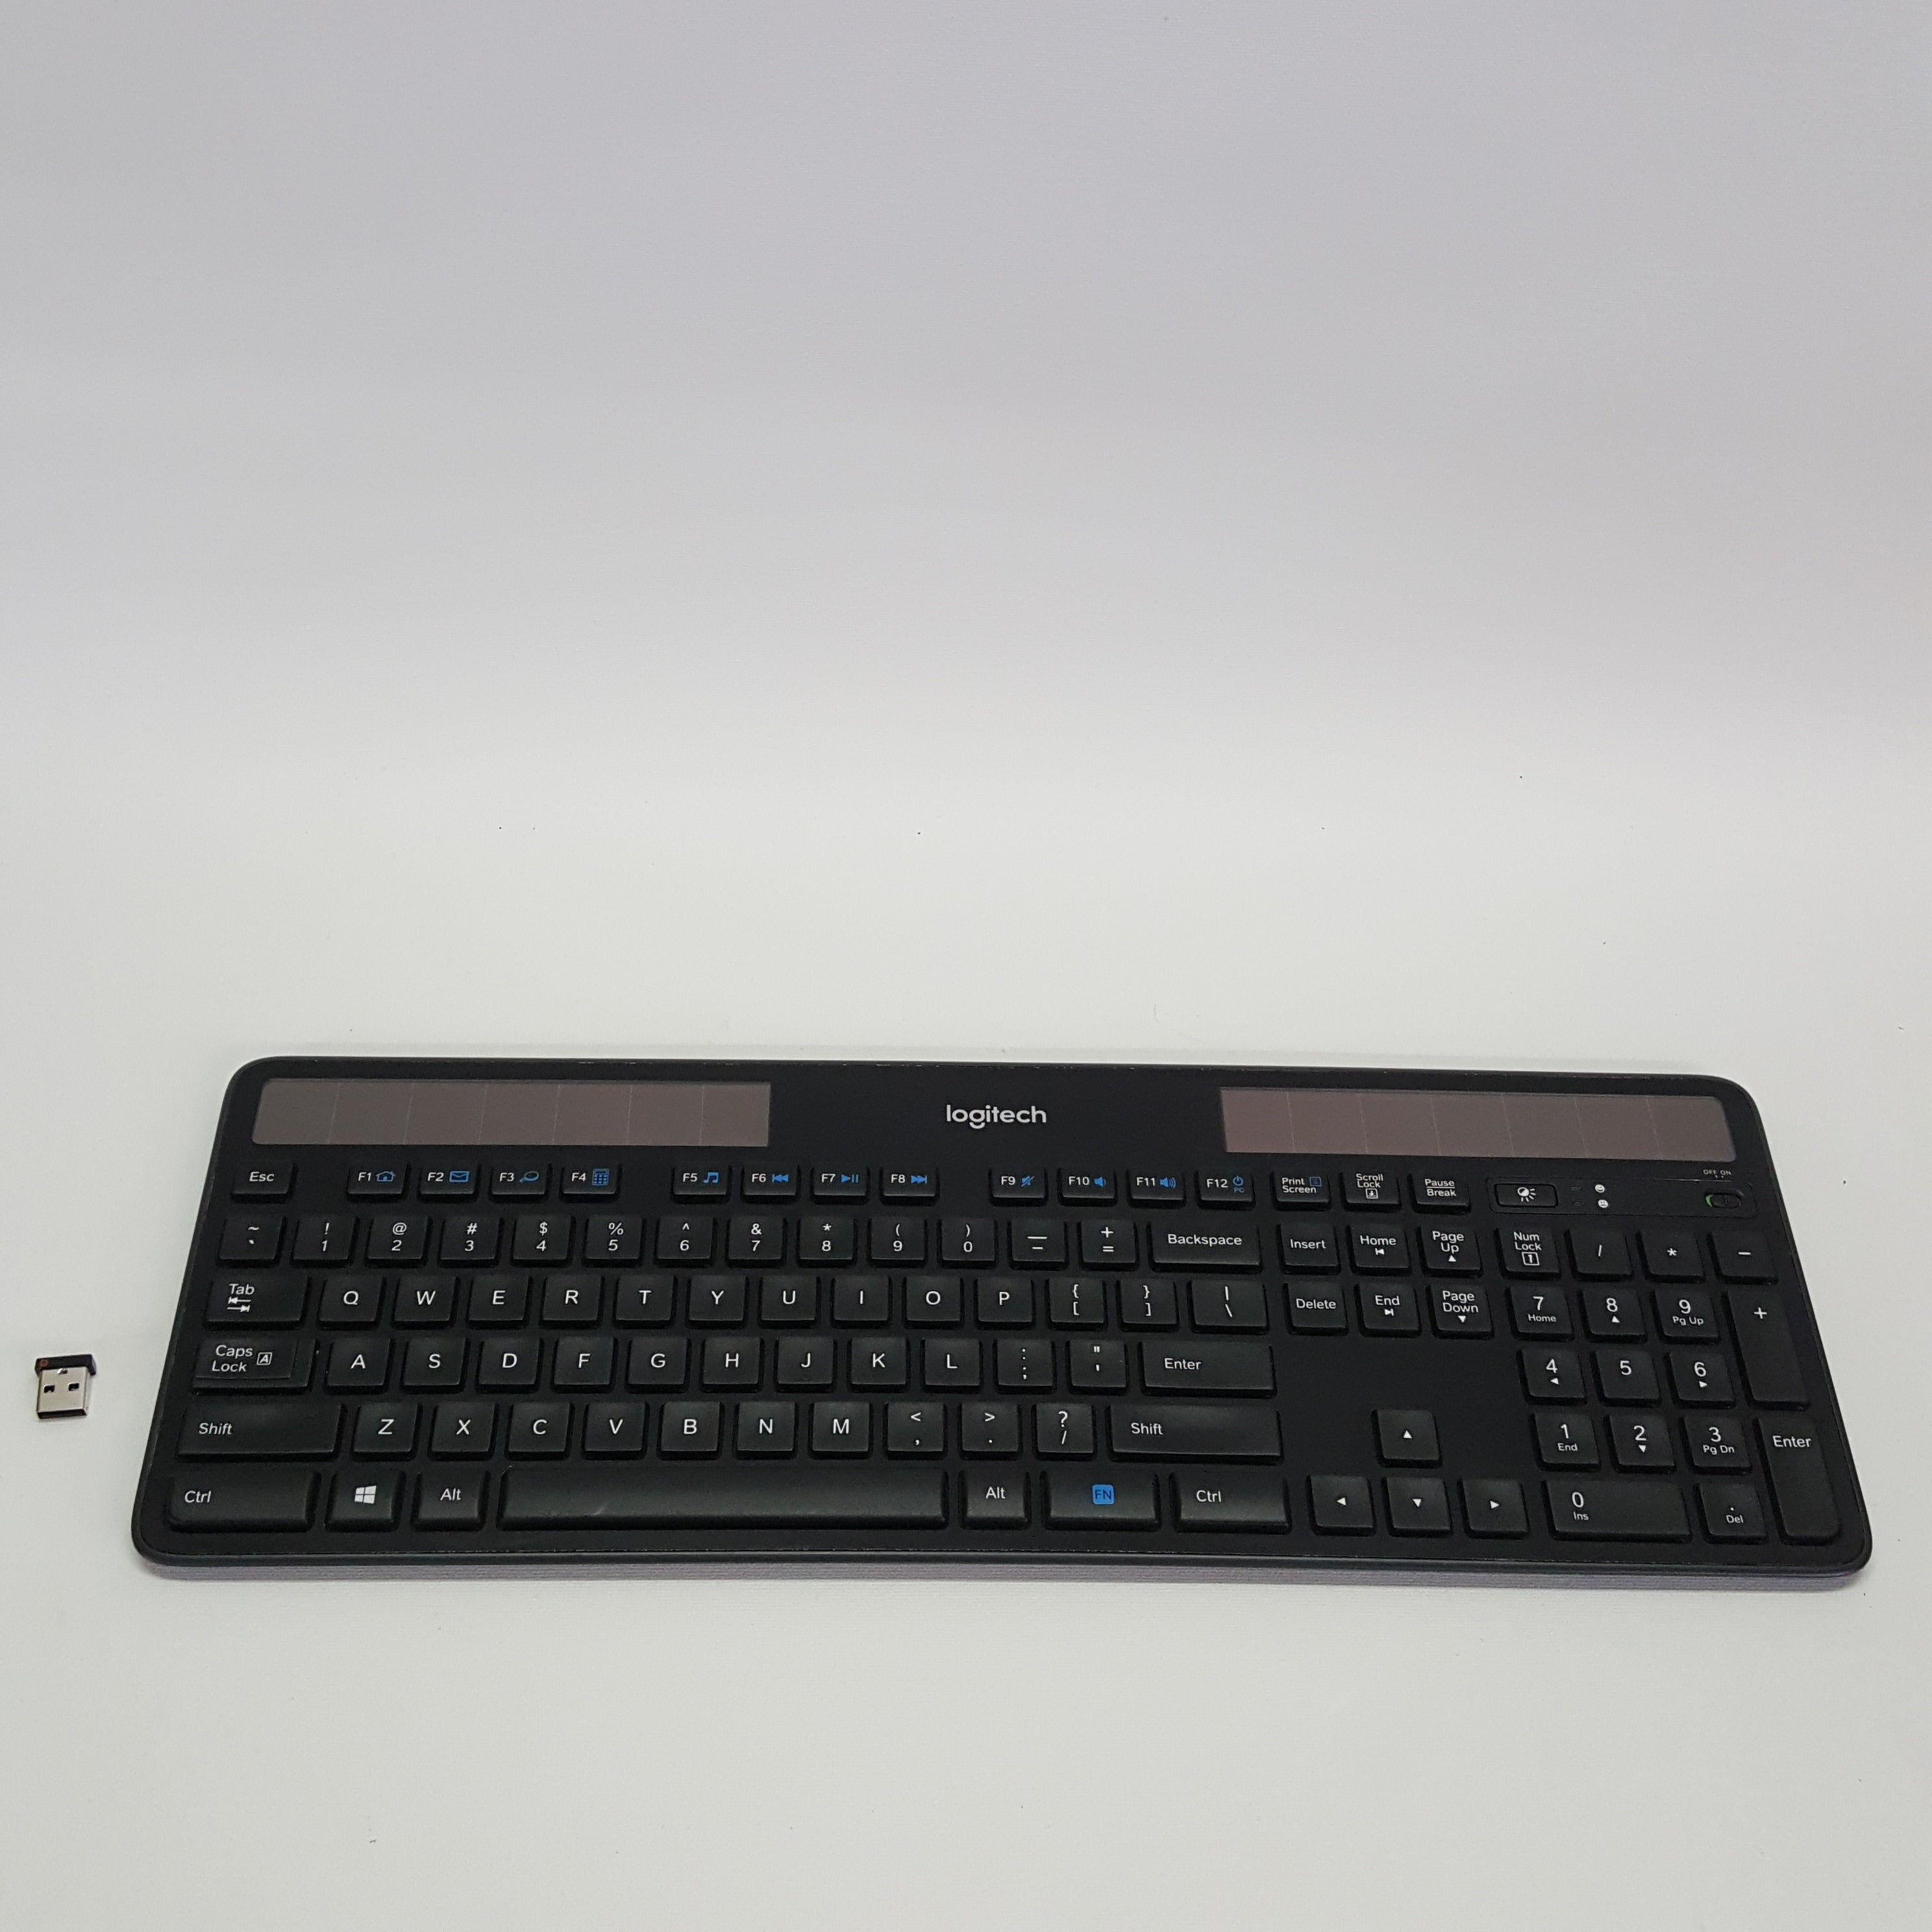 logitech k750 wireless solar powered keyboard